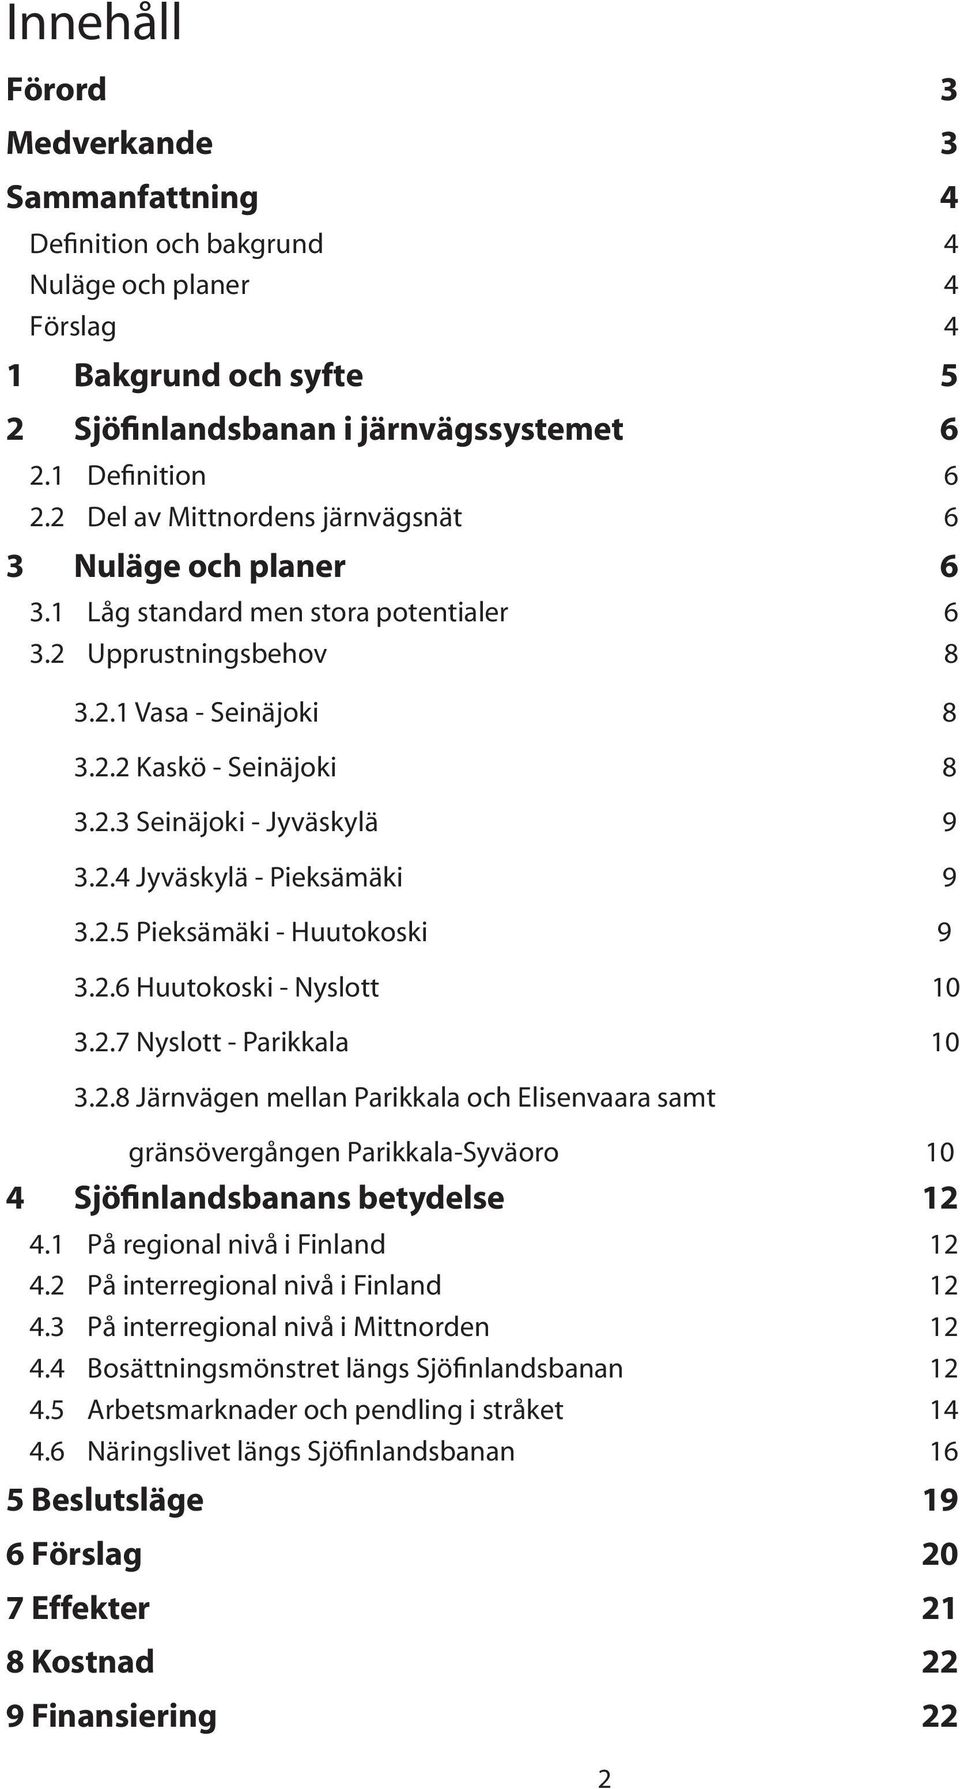 2.4 Jyväskylä - Pieksämäki 9 3.2.5 Pieksämäki - Huutokoski 9 3.2.6 Huutokoski - Nyslott 10 3.2.7 Nyslott - Parikkala 10 3.2.8 Järnvägen mellan Parikkala och Elisenvaara samt gränsövergången Parikkala-Syväoro 10 4 Sjöfinlandsbanans betydelse 12 4.